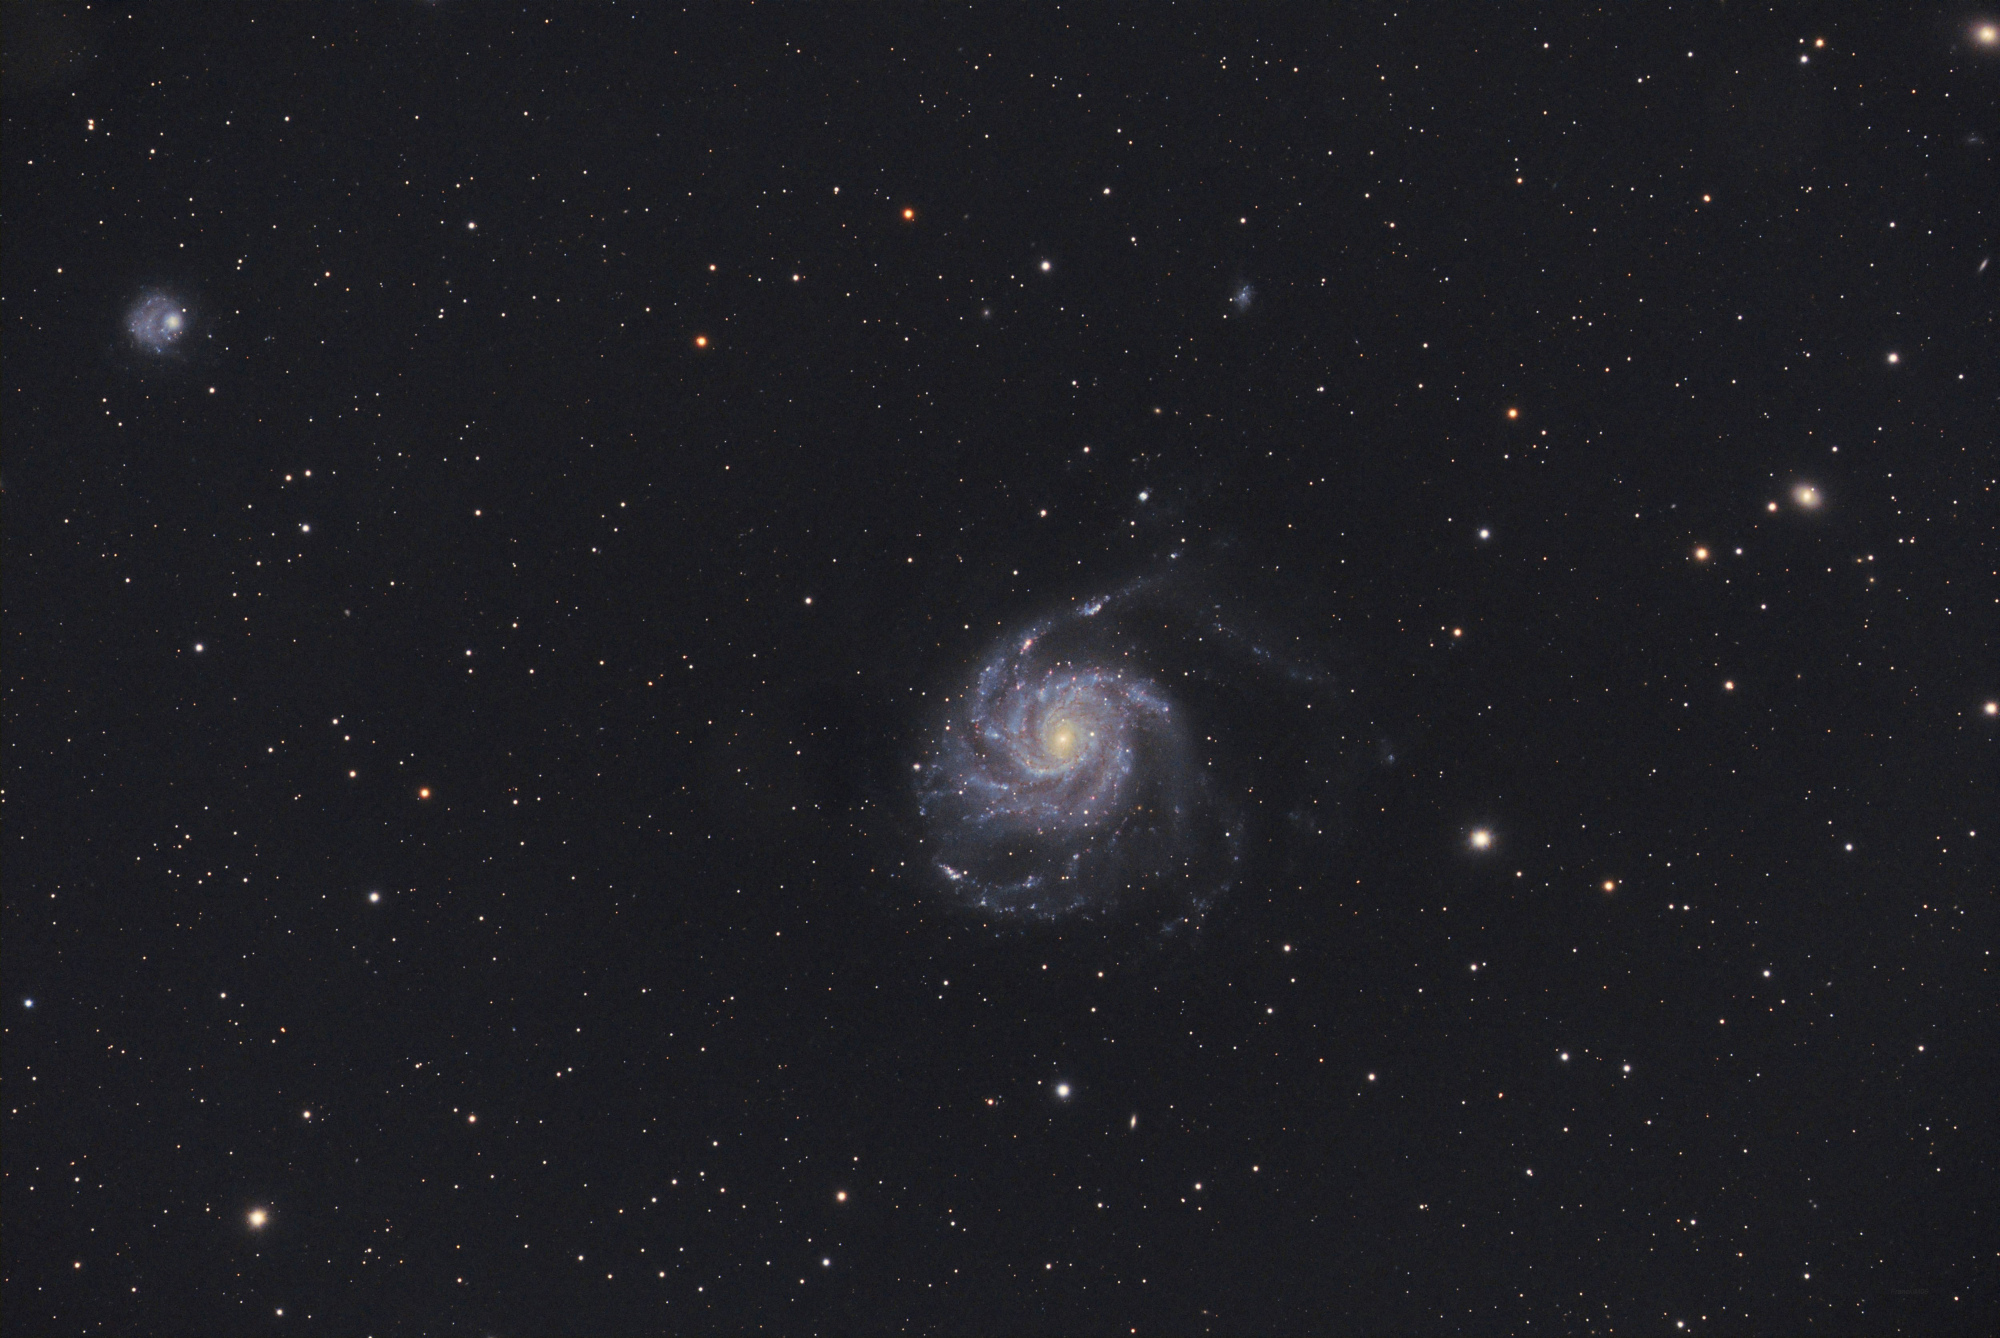 M101_SIRIL-1-cs5-2-FINAL-13.jpg